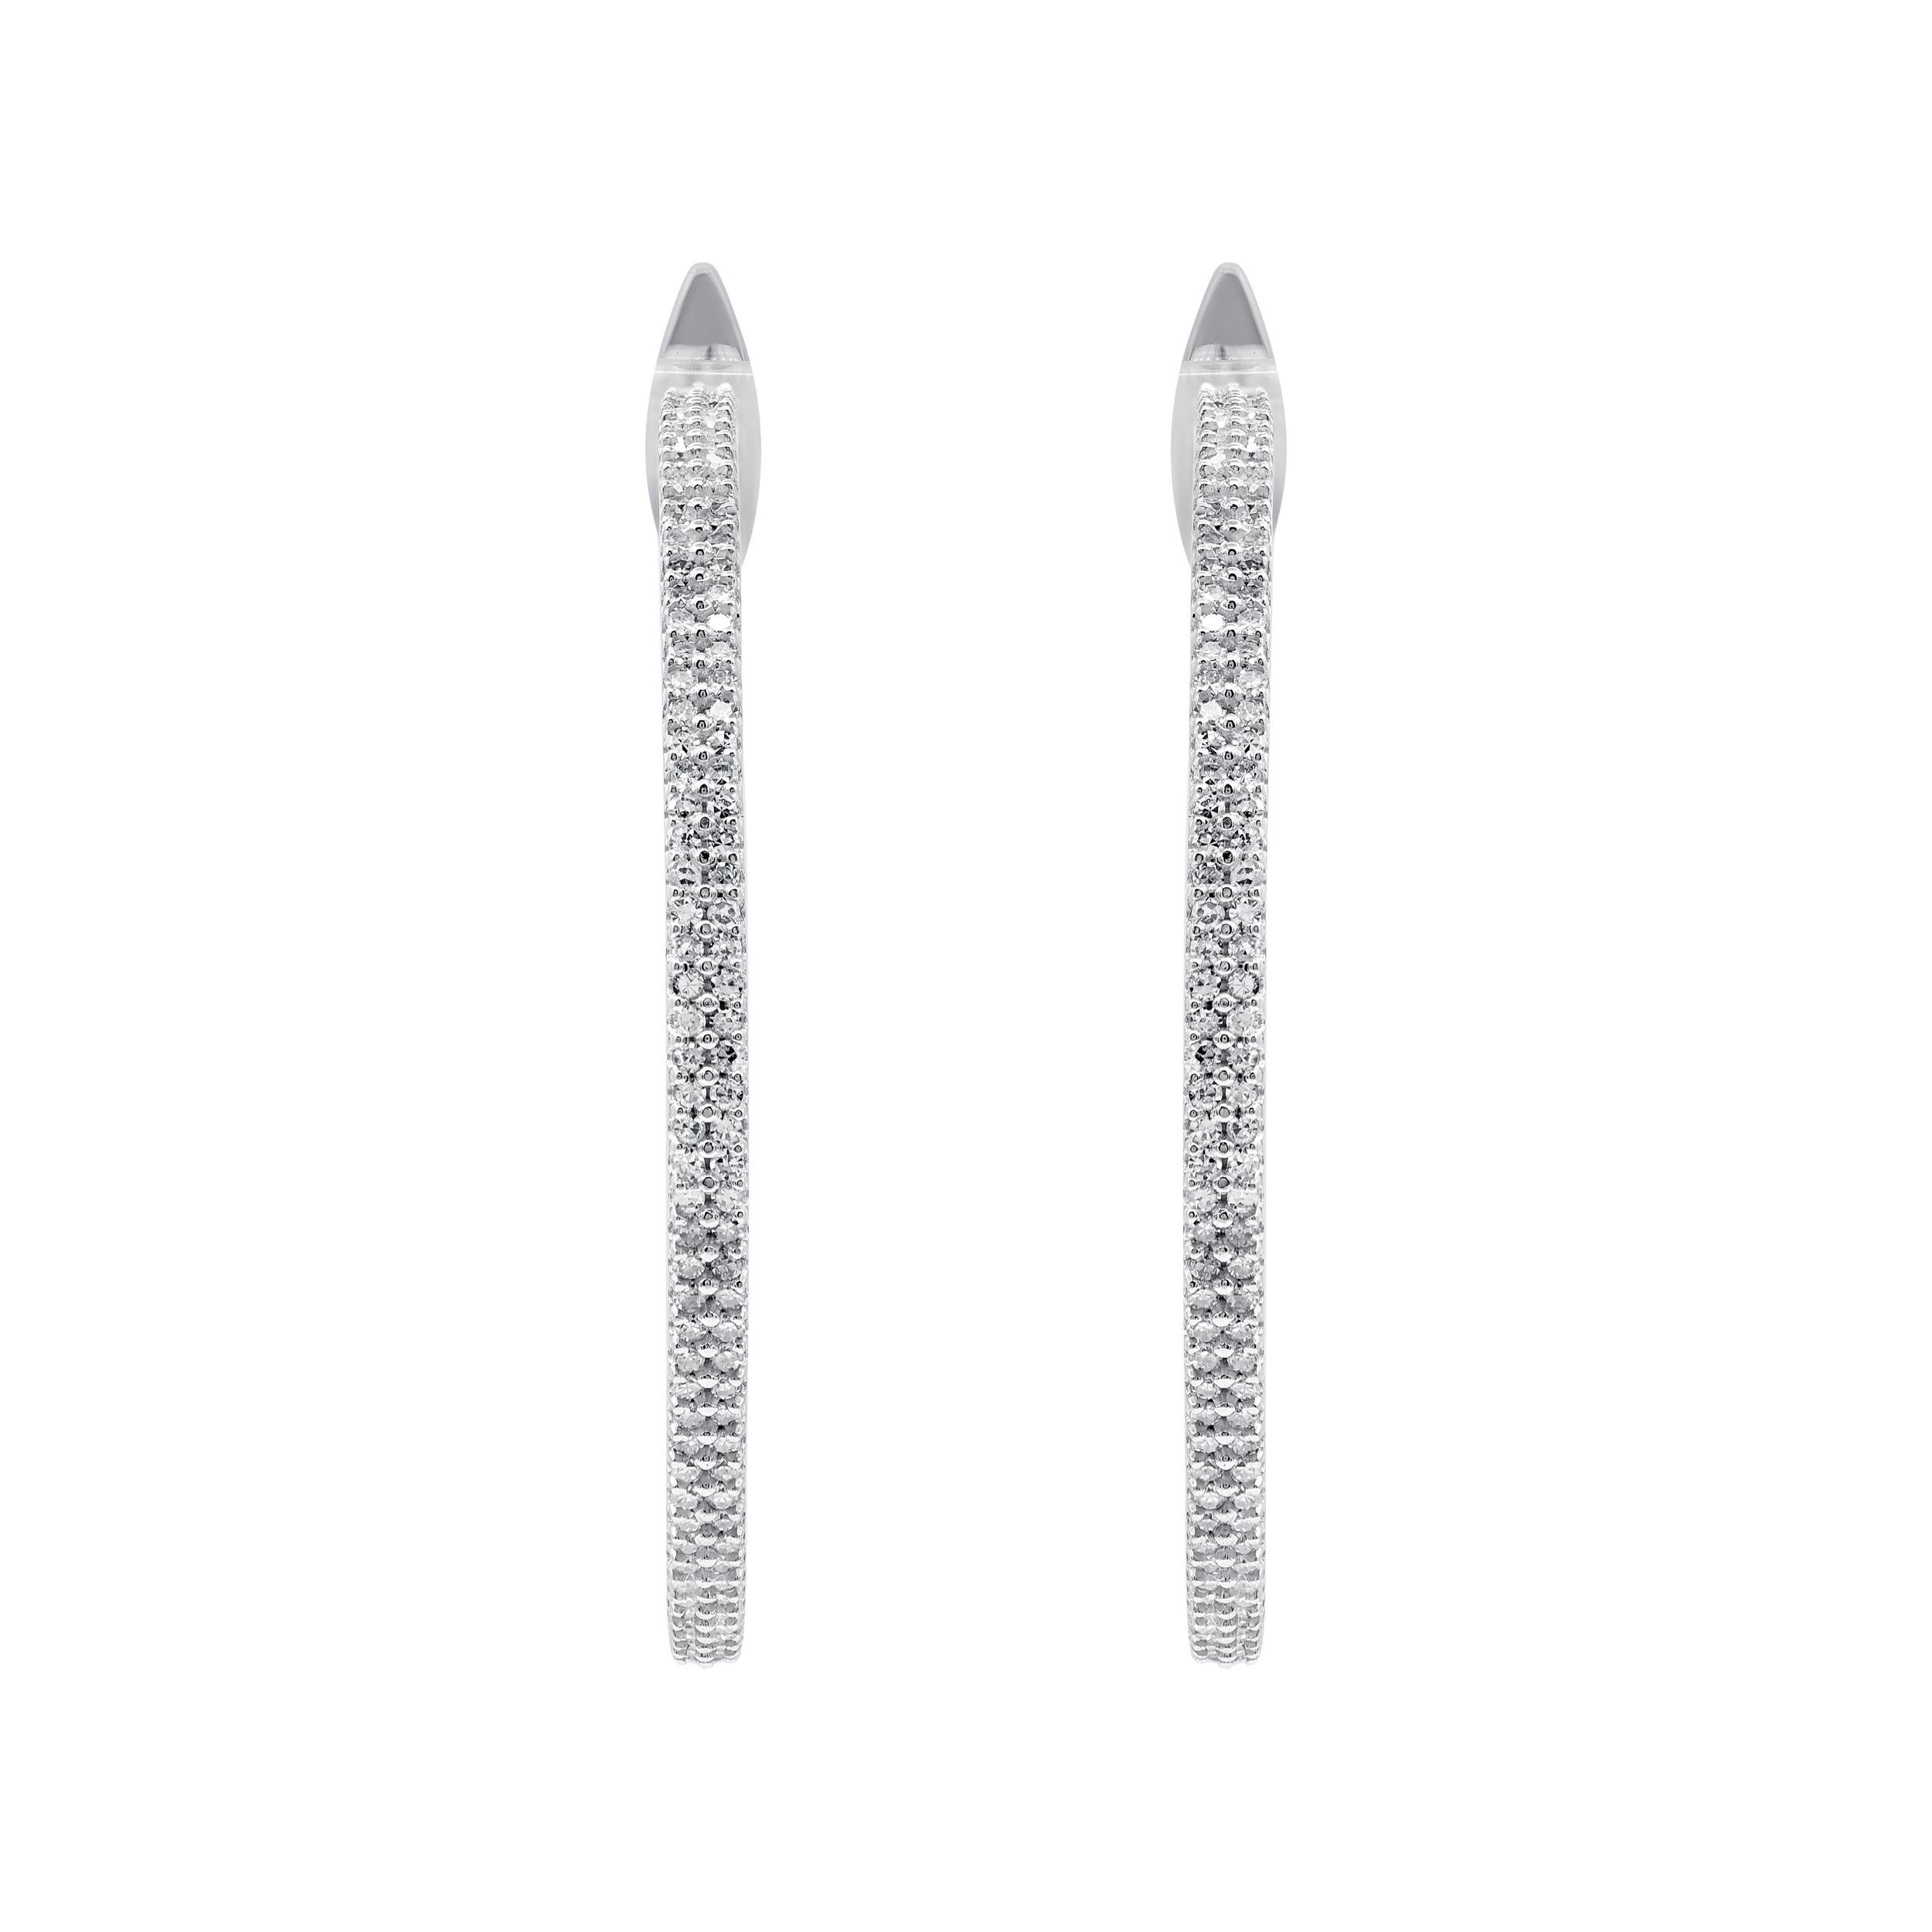 Die funkelnden Inside-Out-Diamantohrringe sind in aufwändiger Handarbeit aus 14 Karat Weißgold gefertigt und mit 360 runden Diamanten in einer eleganten Zackenfassung besetzt. Die Diamanten werden als H-I Farbe, I-2 Reinheit eingestuft. Das